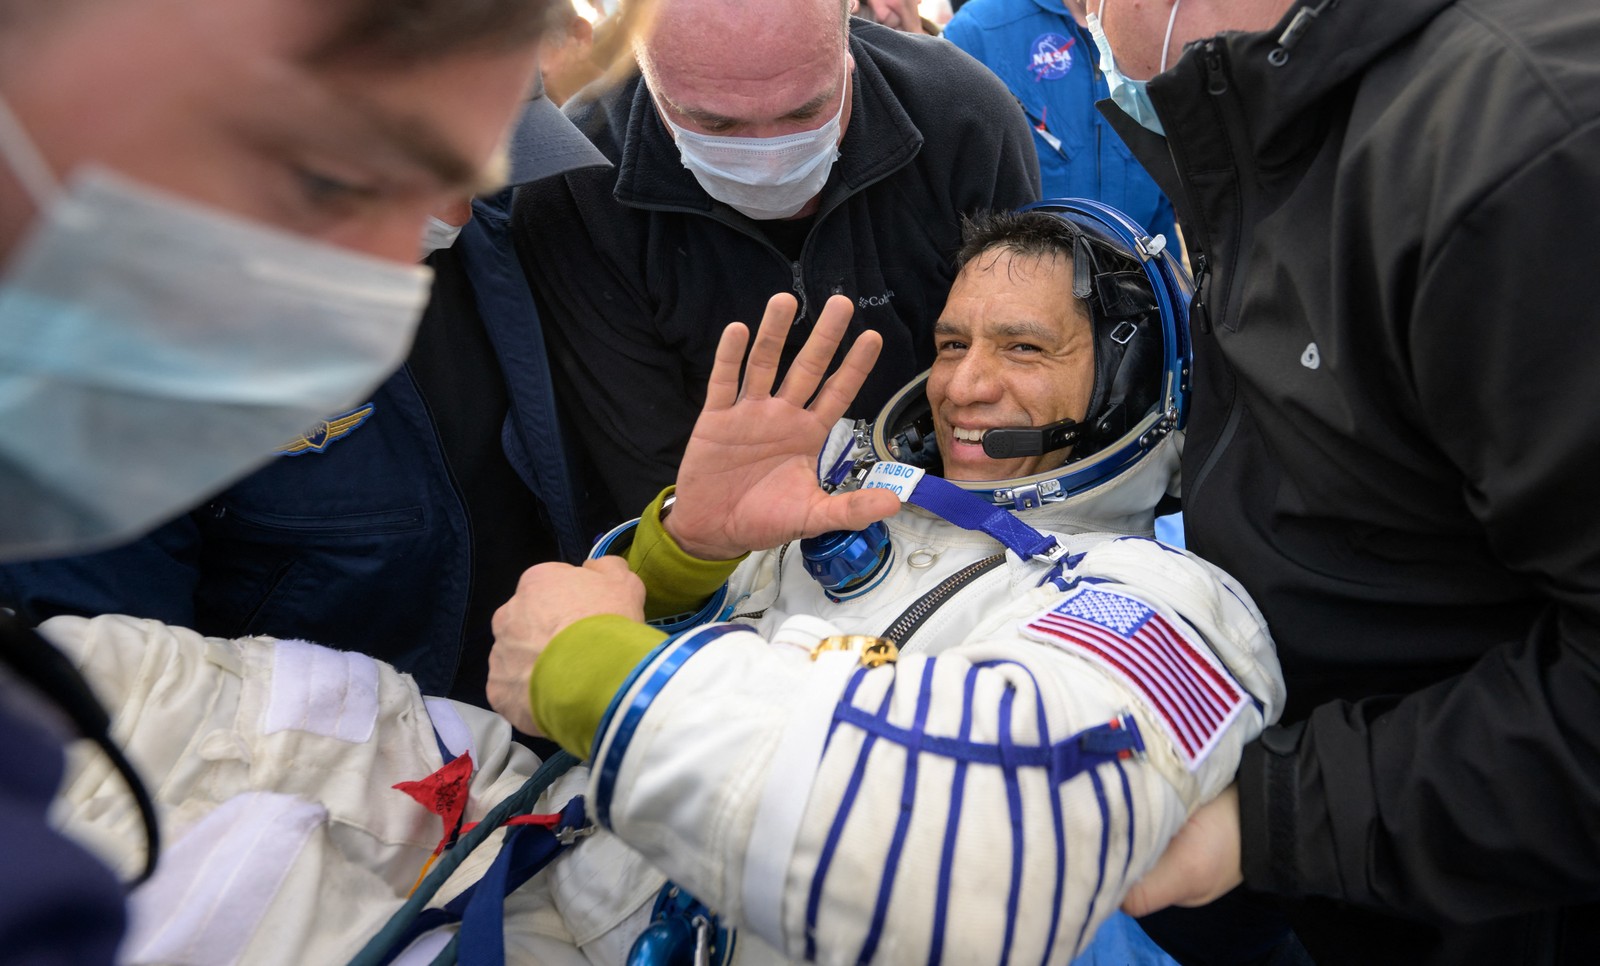 Frank Rubio acena ao voltar à Terra após mais de um ano em órbita — Foto: Bill INGALLS / NASA / AFP